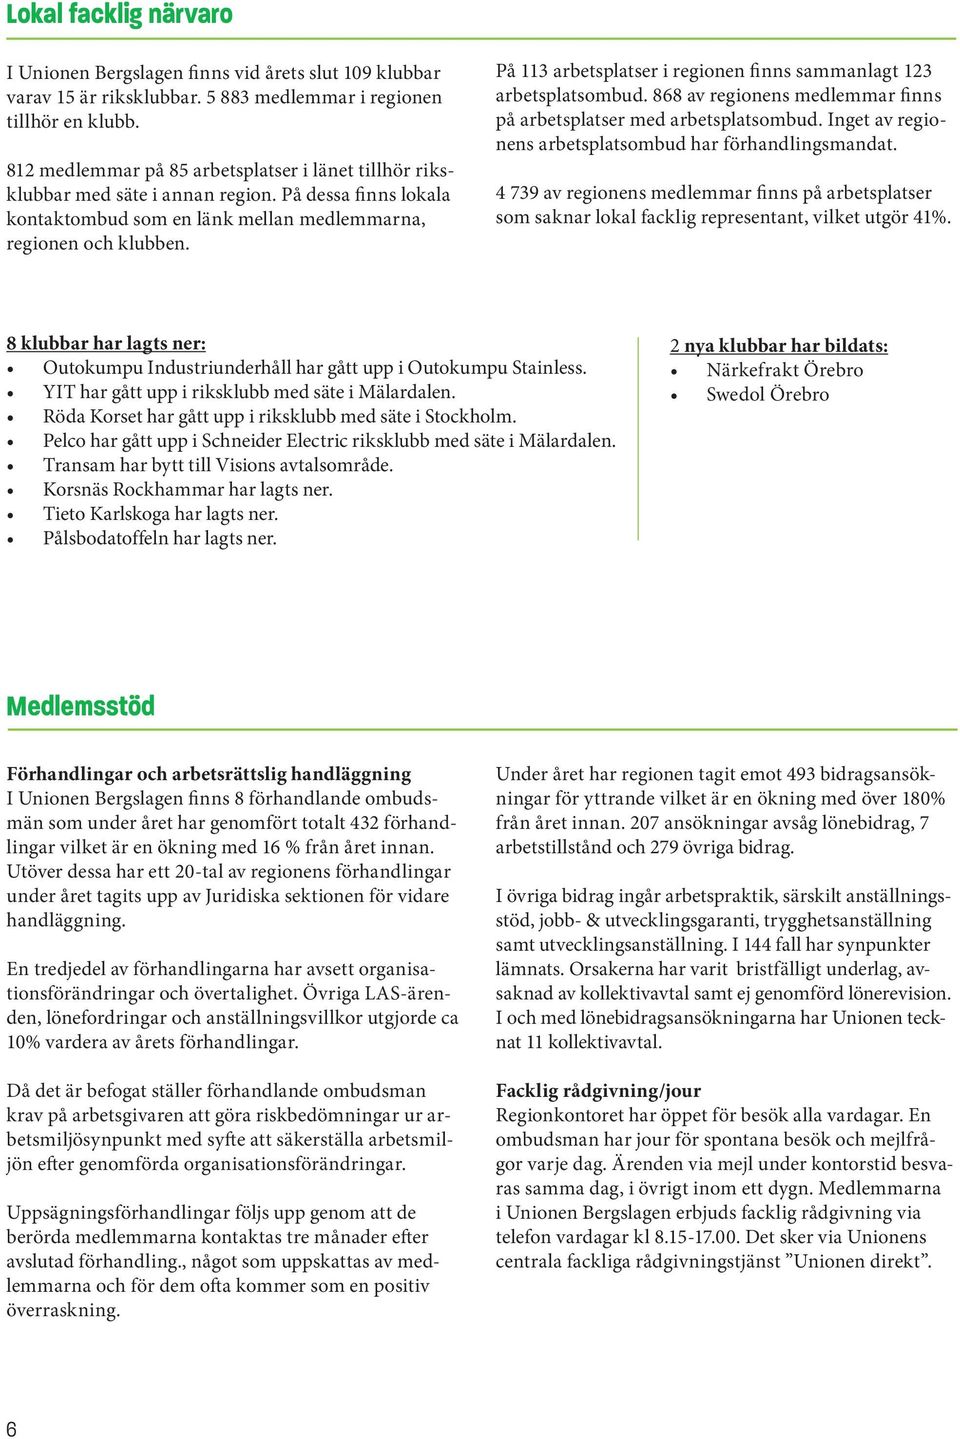 ÅRSberättelse 2011 Unionen Bergslagen - PDF Gratis nedladdning